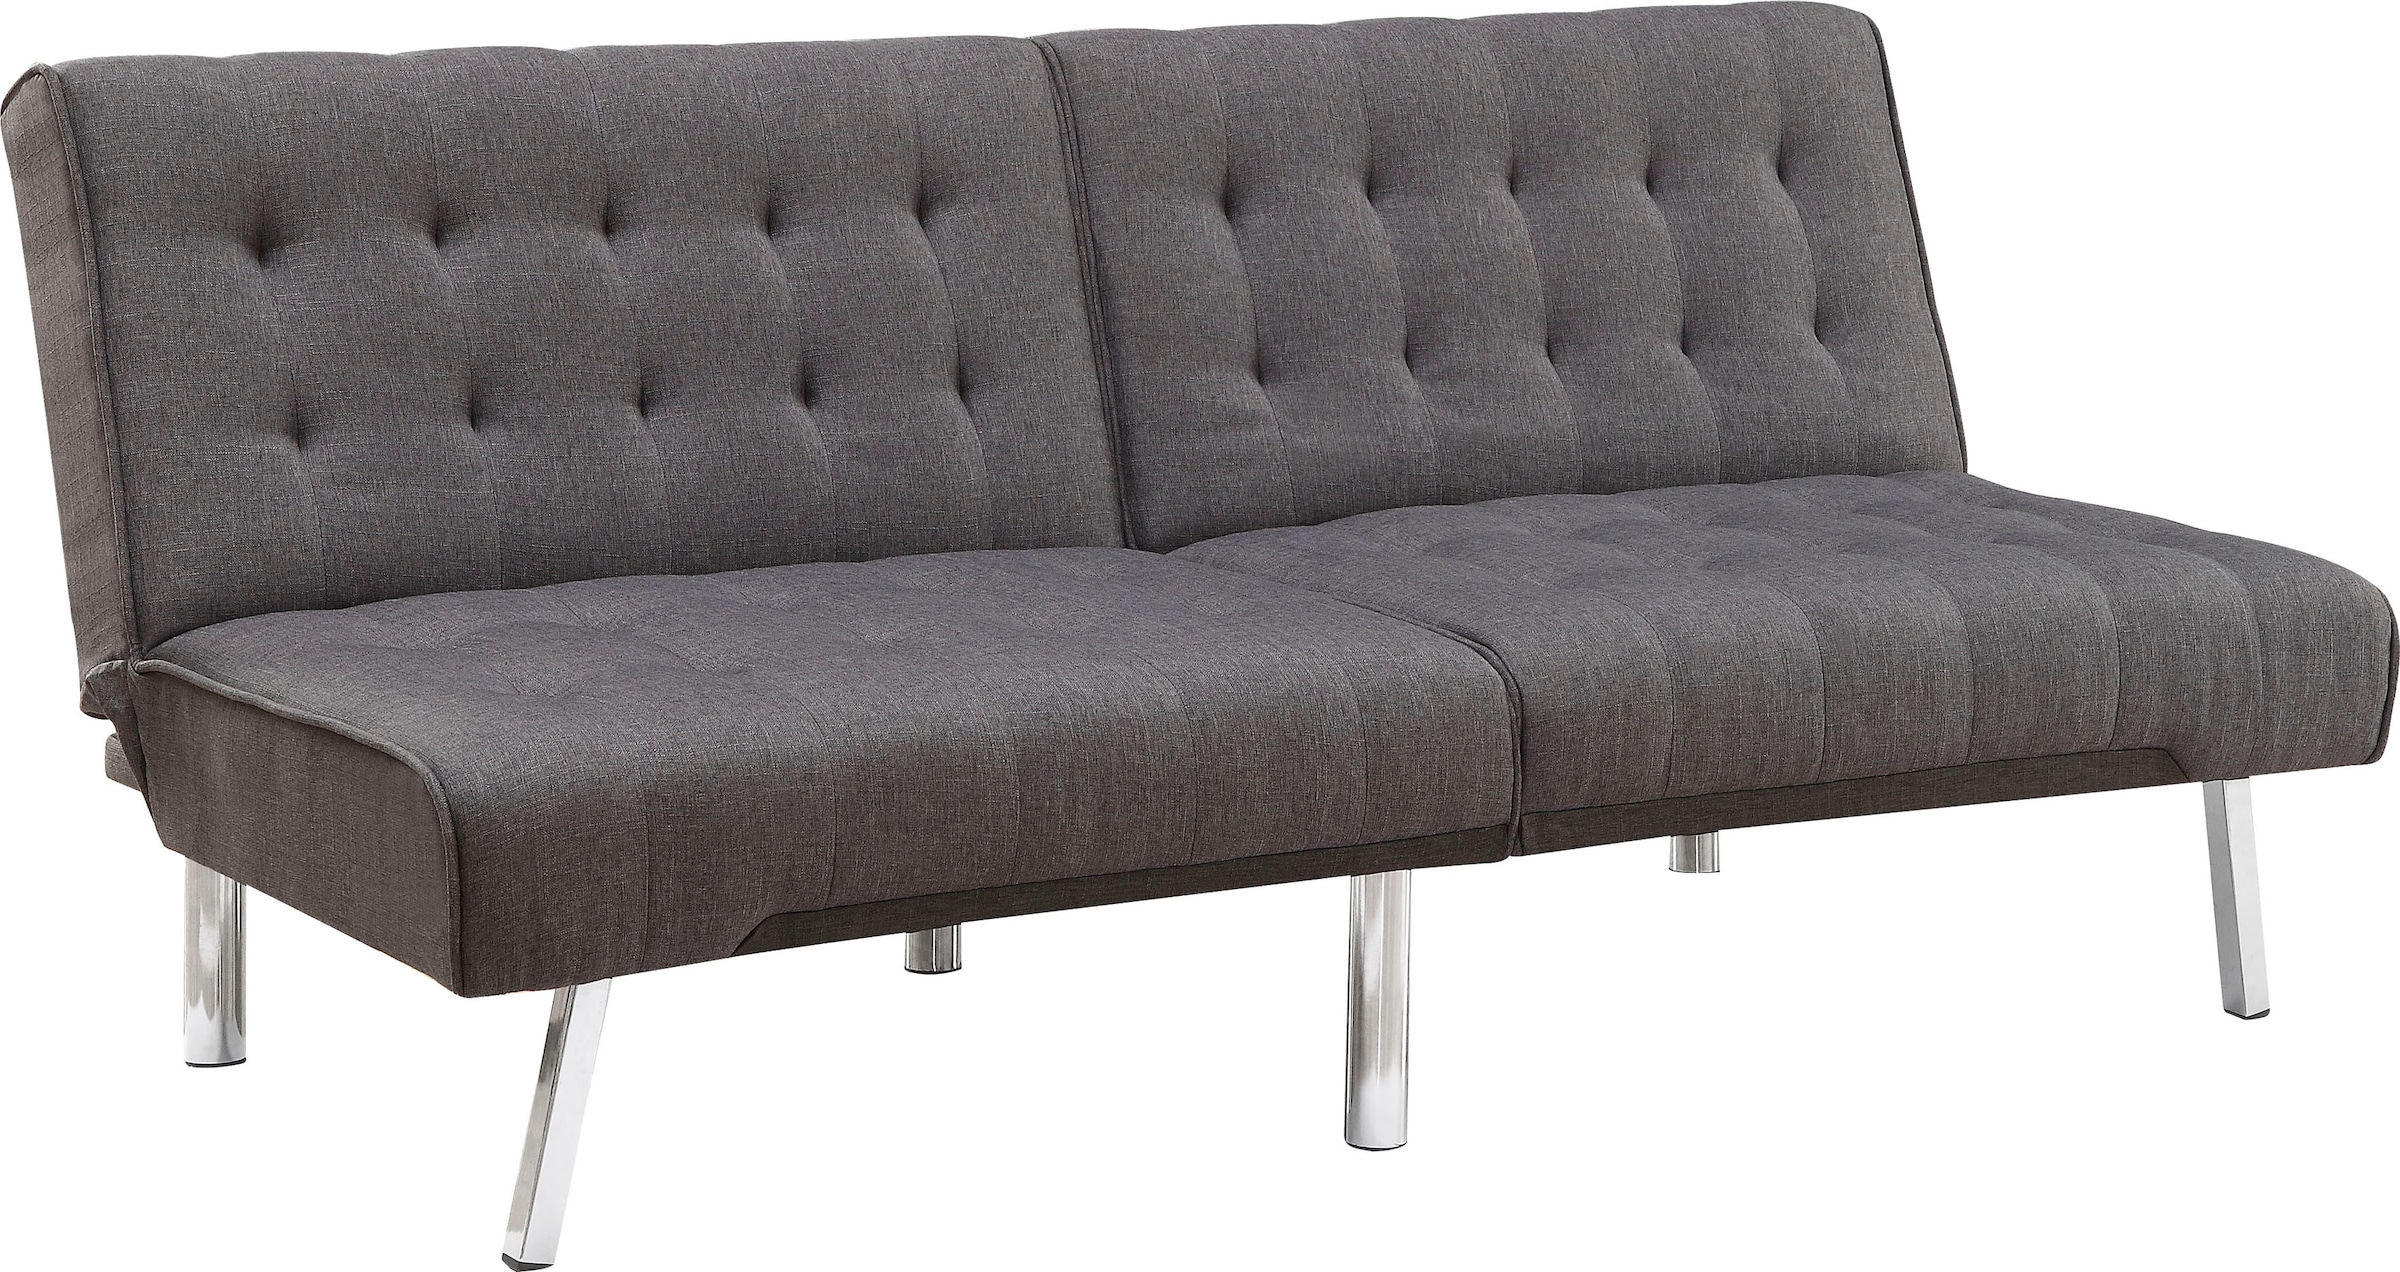 Atlantic Home Collection Sofa Mit Verstellbarer Ruckenlehne Auf Raten Bestellen Quelle De